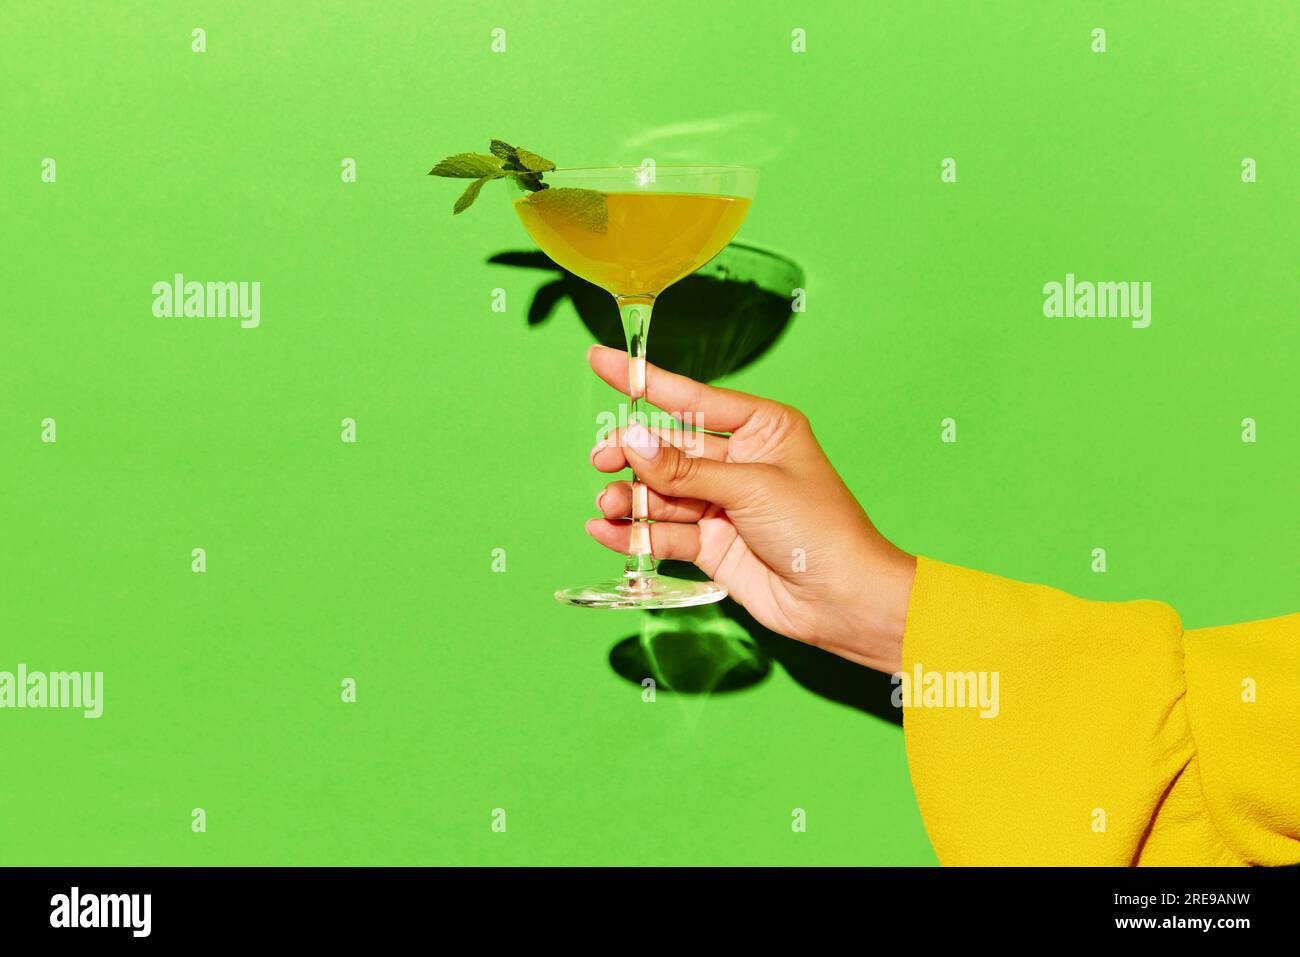 Handgehaltenes hohes Glas mit Rob Roy-Cocktail auf hellorangefarbenem Hintergrund. Werberaum. Stockfoto